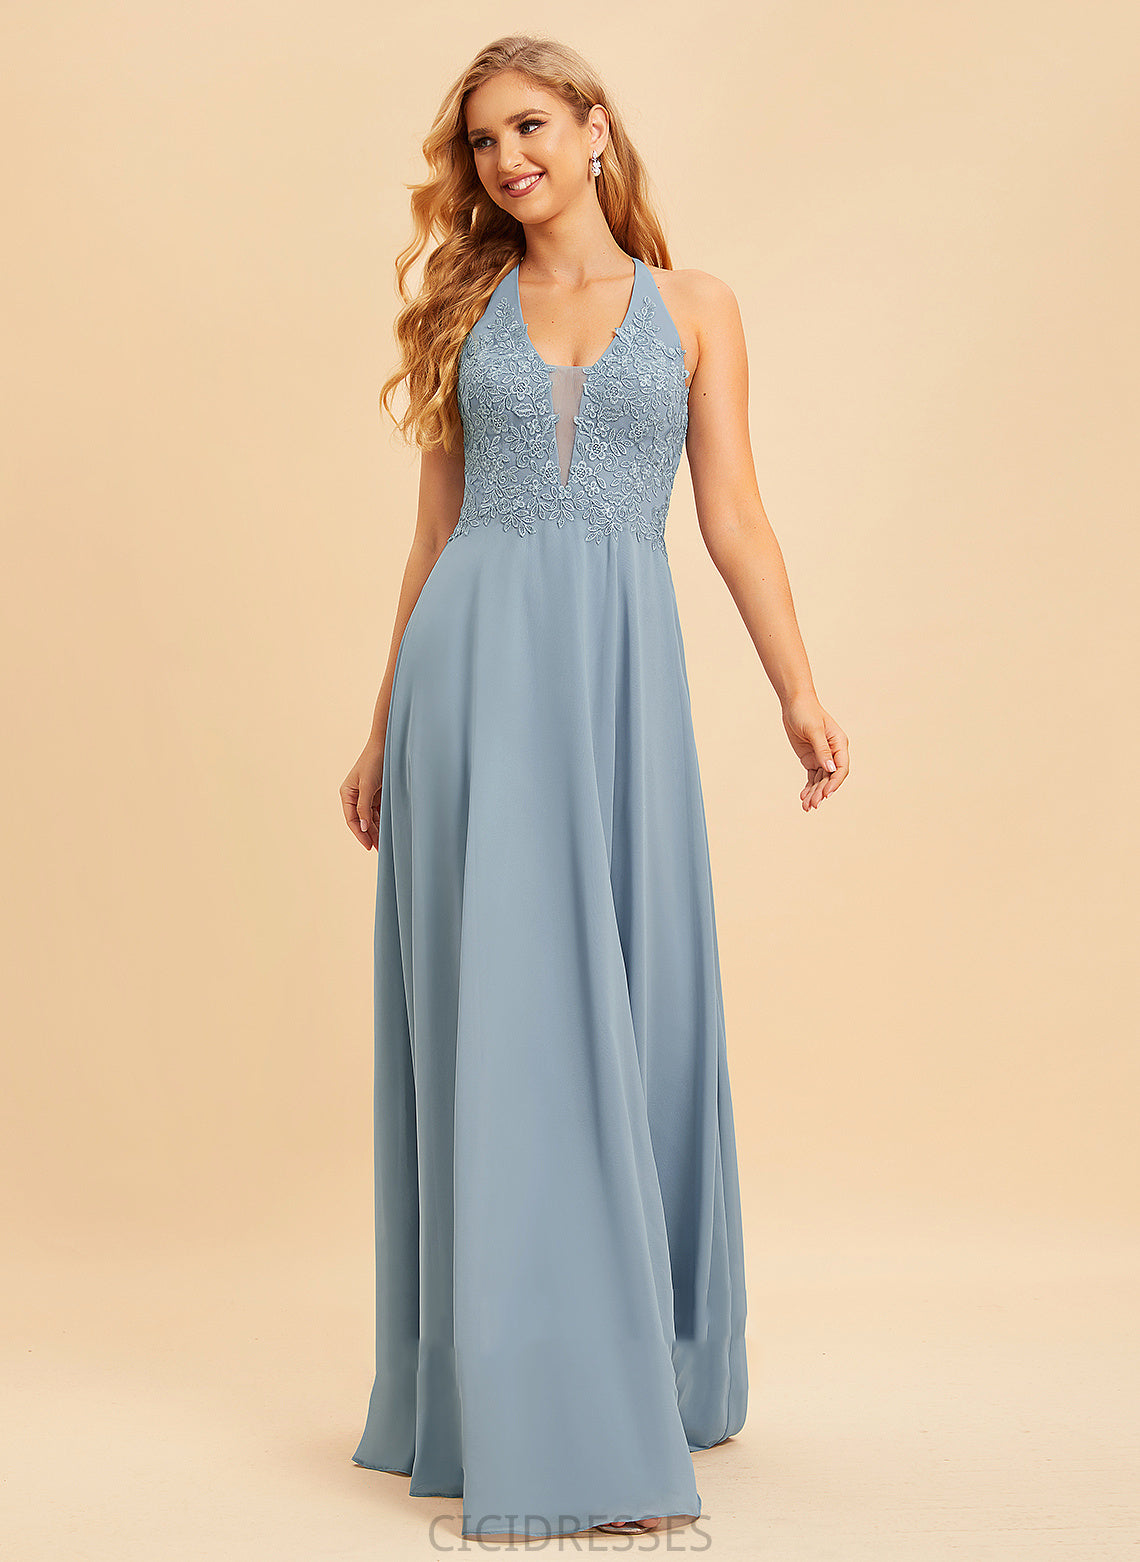 Neckline Fabric Length V-neck SplitFront Floor-Length Embellishment A-Line Silhouette Lace Precious Knee Length Bridesmaid Dresses